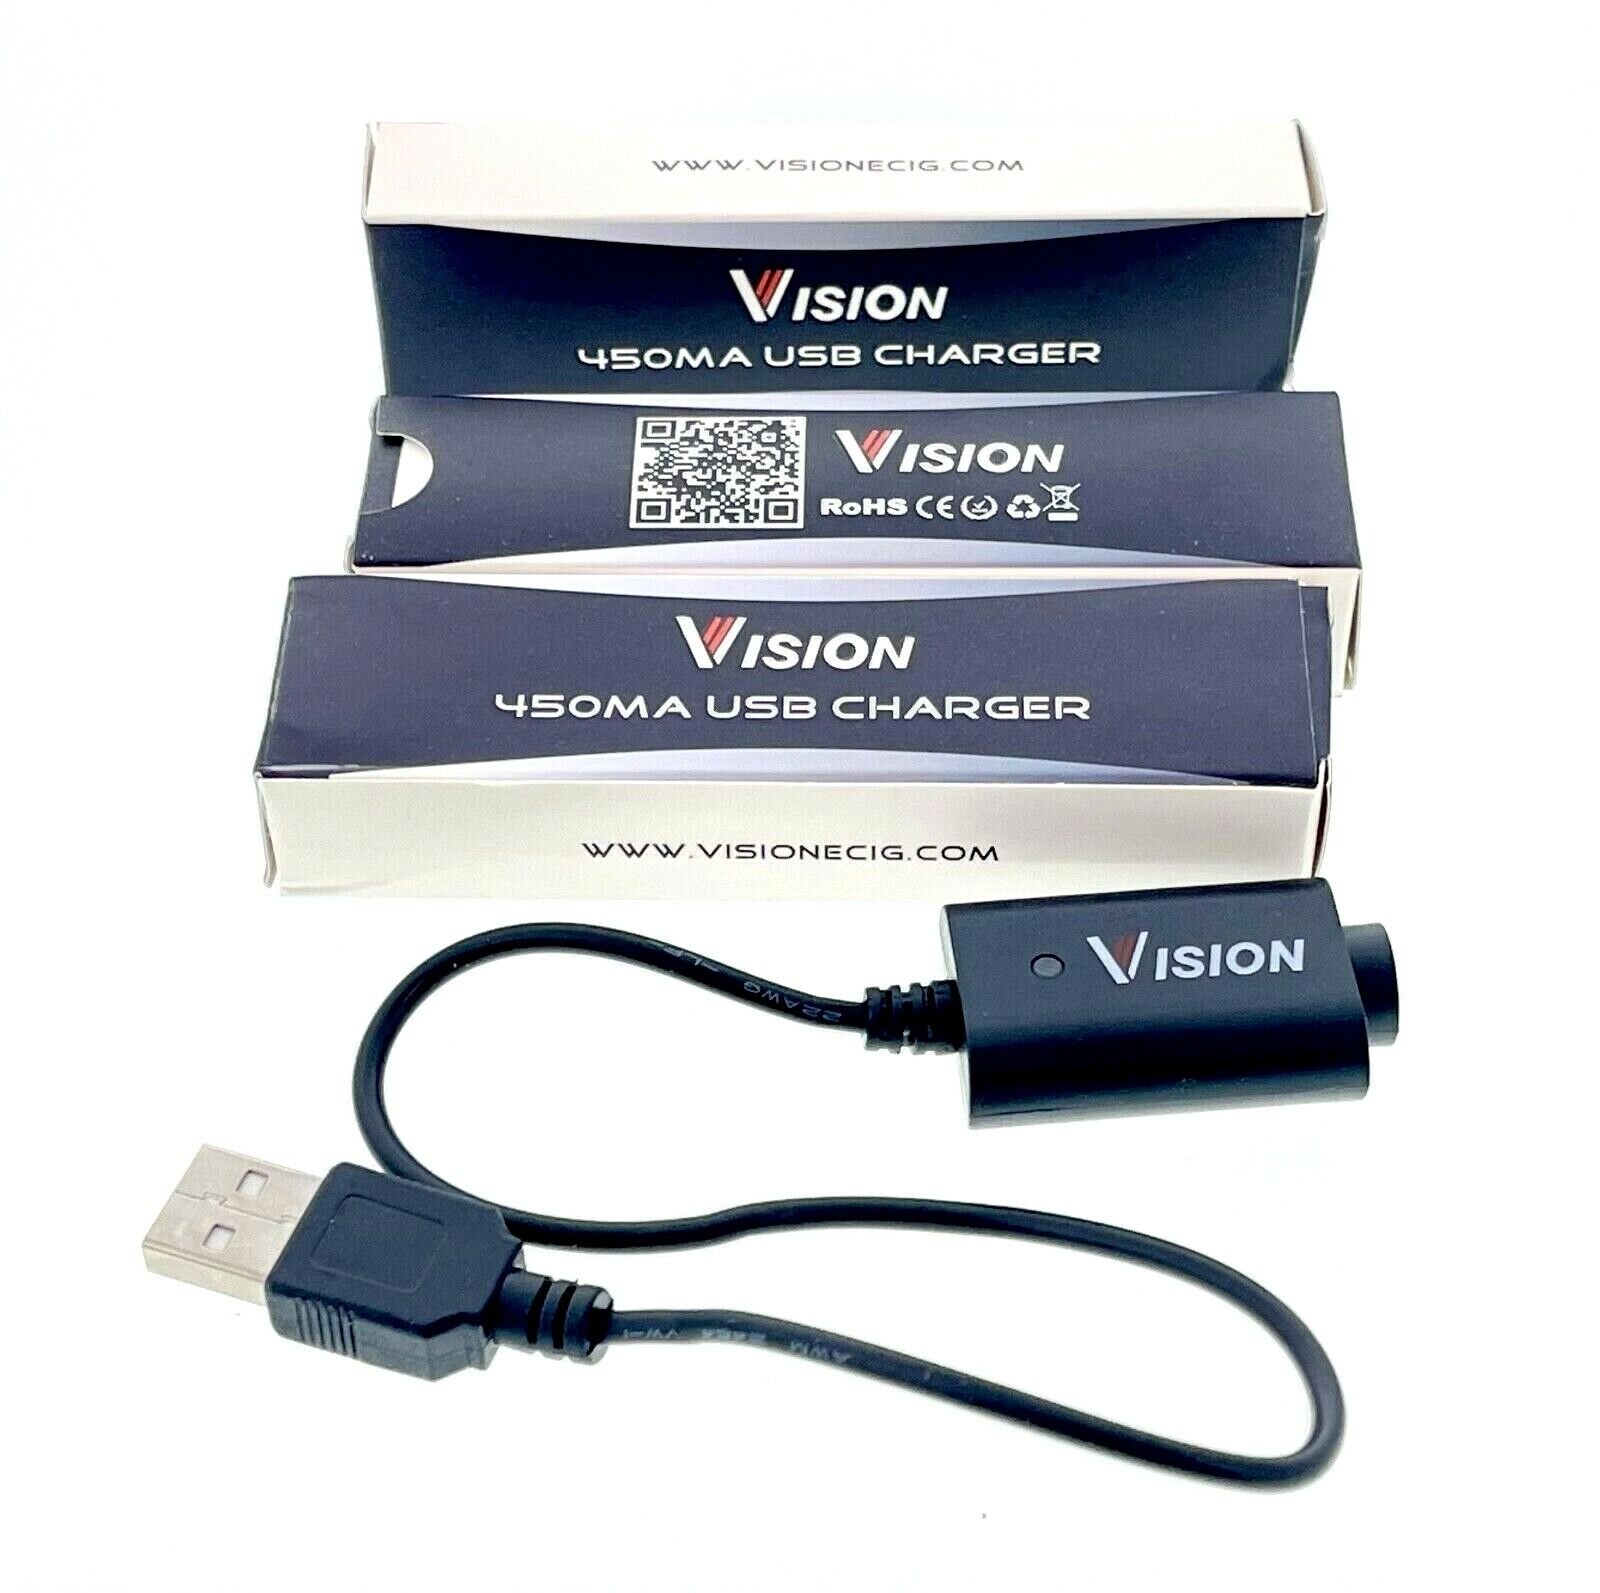 eGo USB Charger 5V 500mA Output DC 4.2V 420mA (3 or 5 LOT)